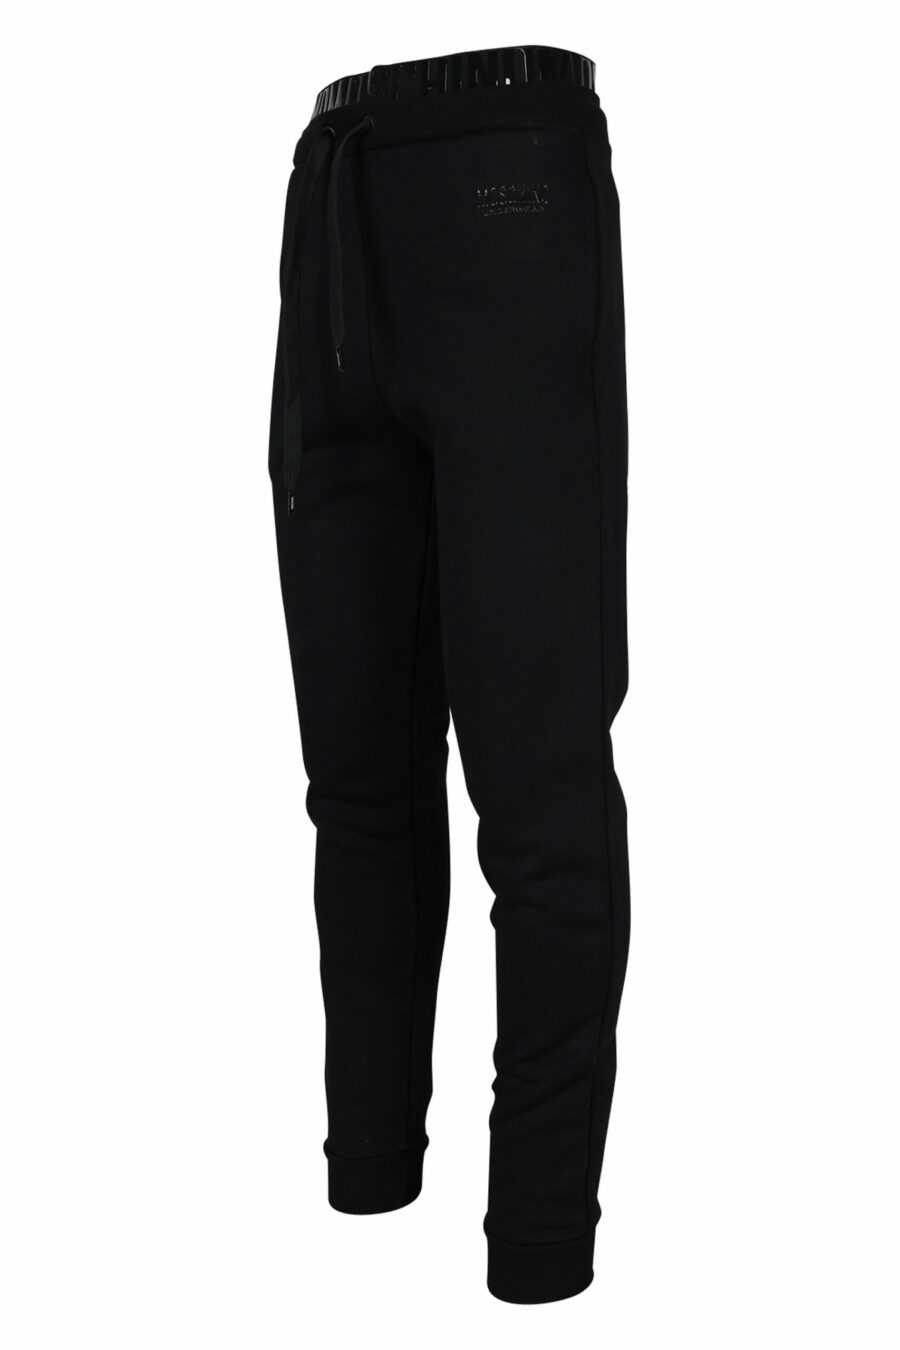 Pantalón de chándal con logo monocromático en cinta en cintura - 667113016740 1 scaled